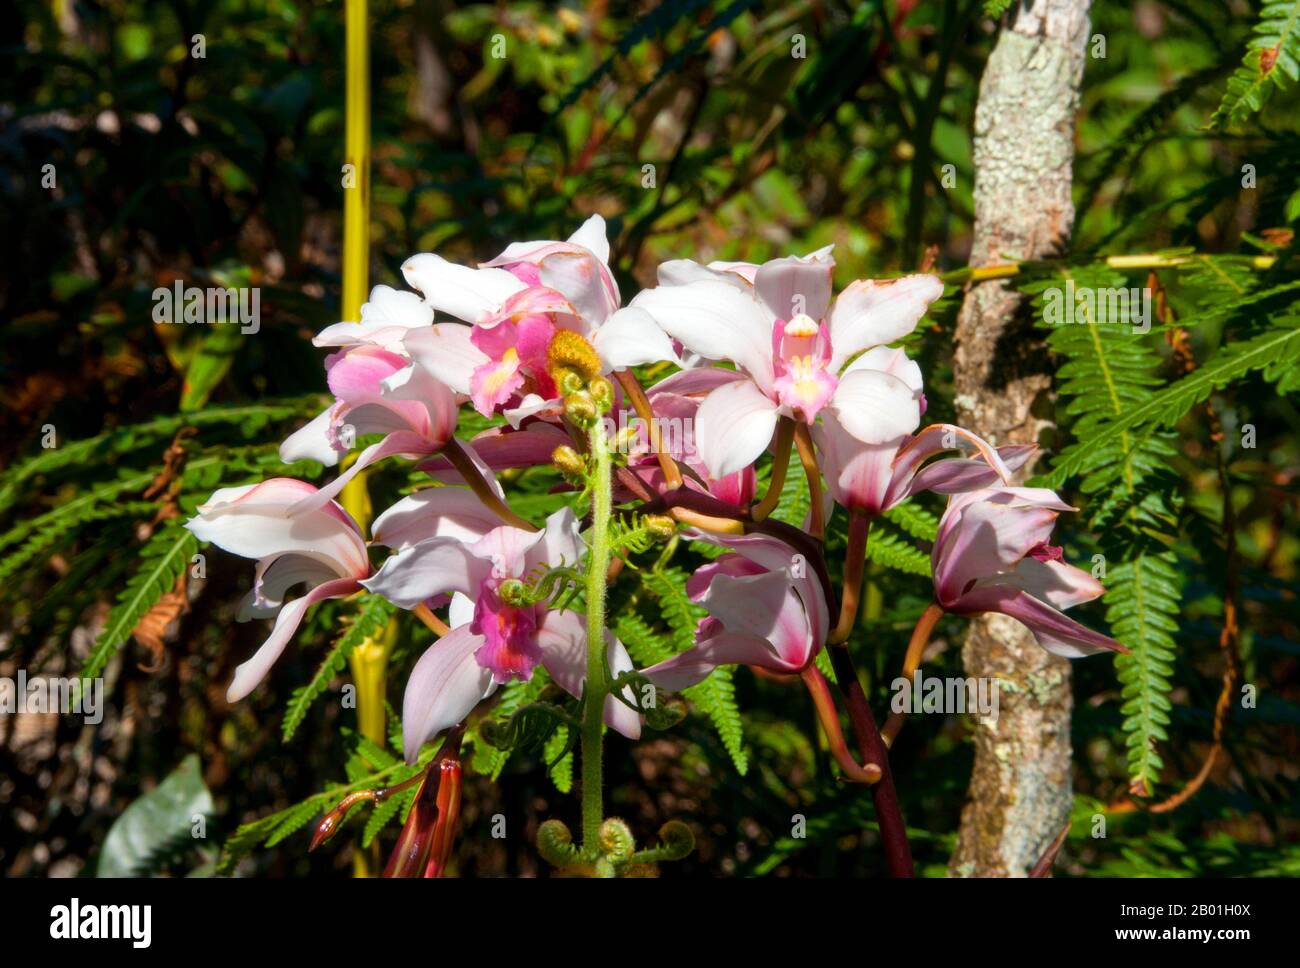 Thaïlande : orchidées sauvages à Phu Luang Wildlife Sanctuary, province de Loei. La province de Loei (thaï : เลย) est située dans le nord-est de la Thaïlande. Les provinces voisines sont (de l'est dans le sens des aiguilles d'une montre) Nong Khai, Udon Thani, Nongbua Lamphu, Khon Kaen, Phetchabun, Phitsanulok. Au nord, elle borde les provinces de Xaignabouli et Vientiane du Laos. La province est couverte de basses montagnes, tandis que la capitale Loei est située dans un bassin fertile. La rivière Loei, qui traverse la province, est un affluent du Mékong. Banque D'Images